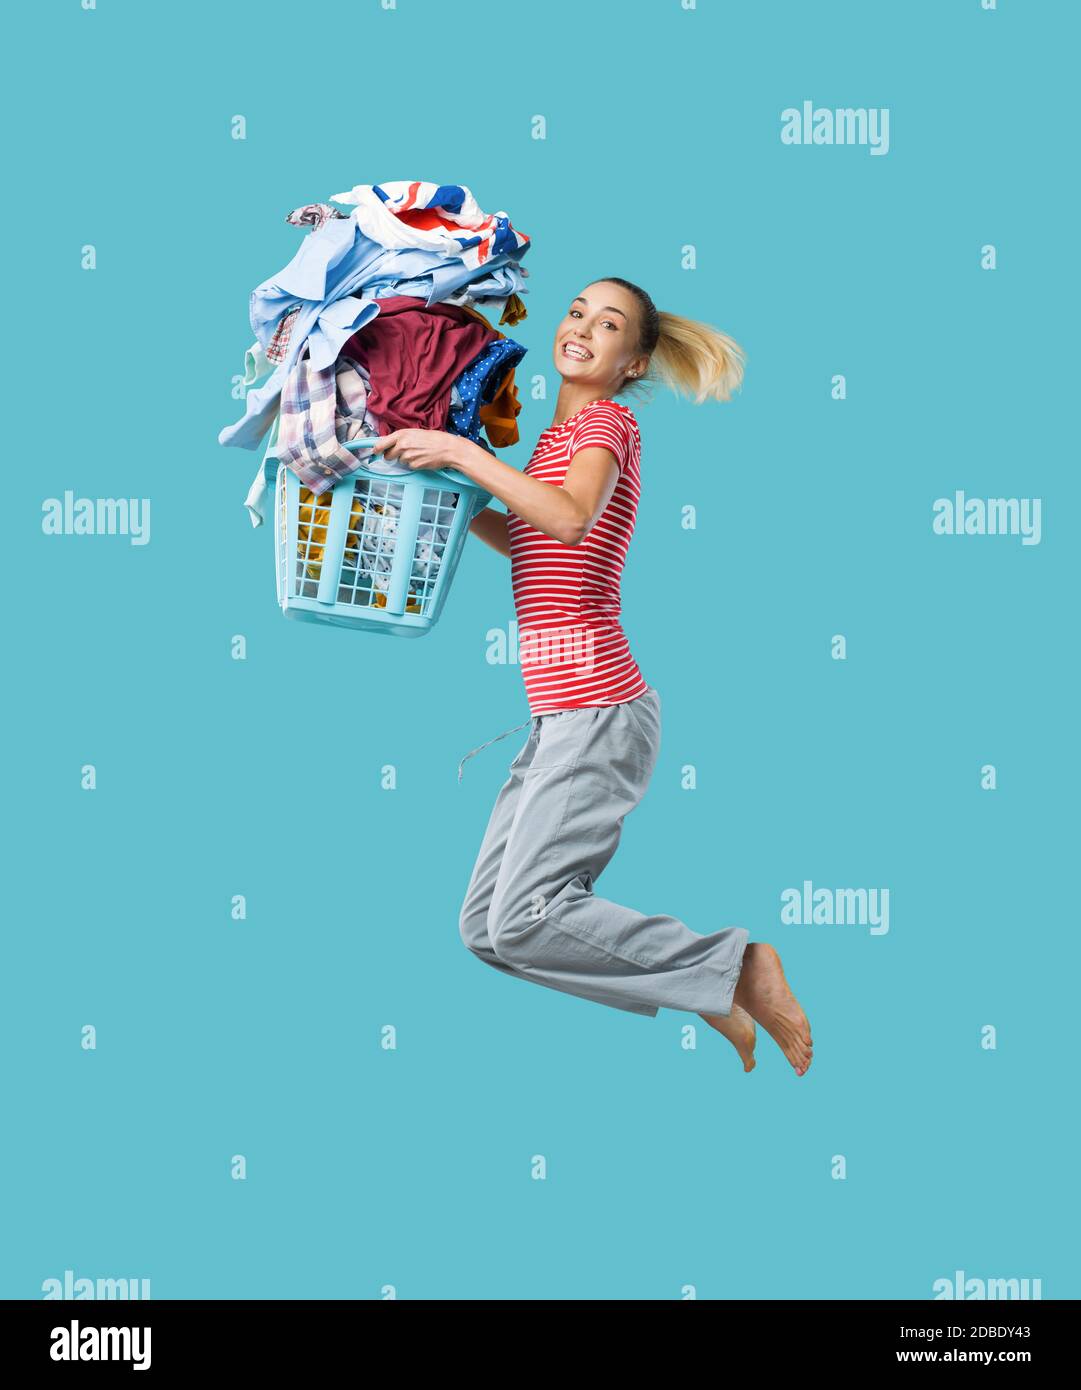 Bonne joyeuse femme faisant du linge et sautant, elle tient un panier de linge rempli de vêtements Banque D'Images